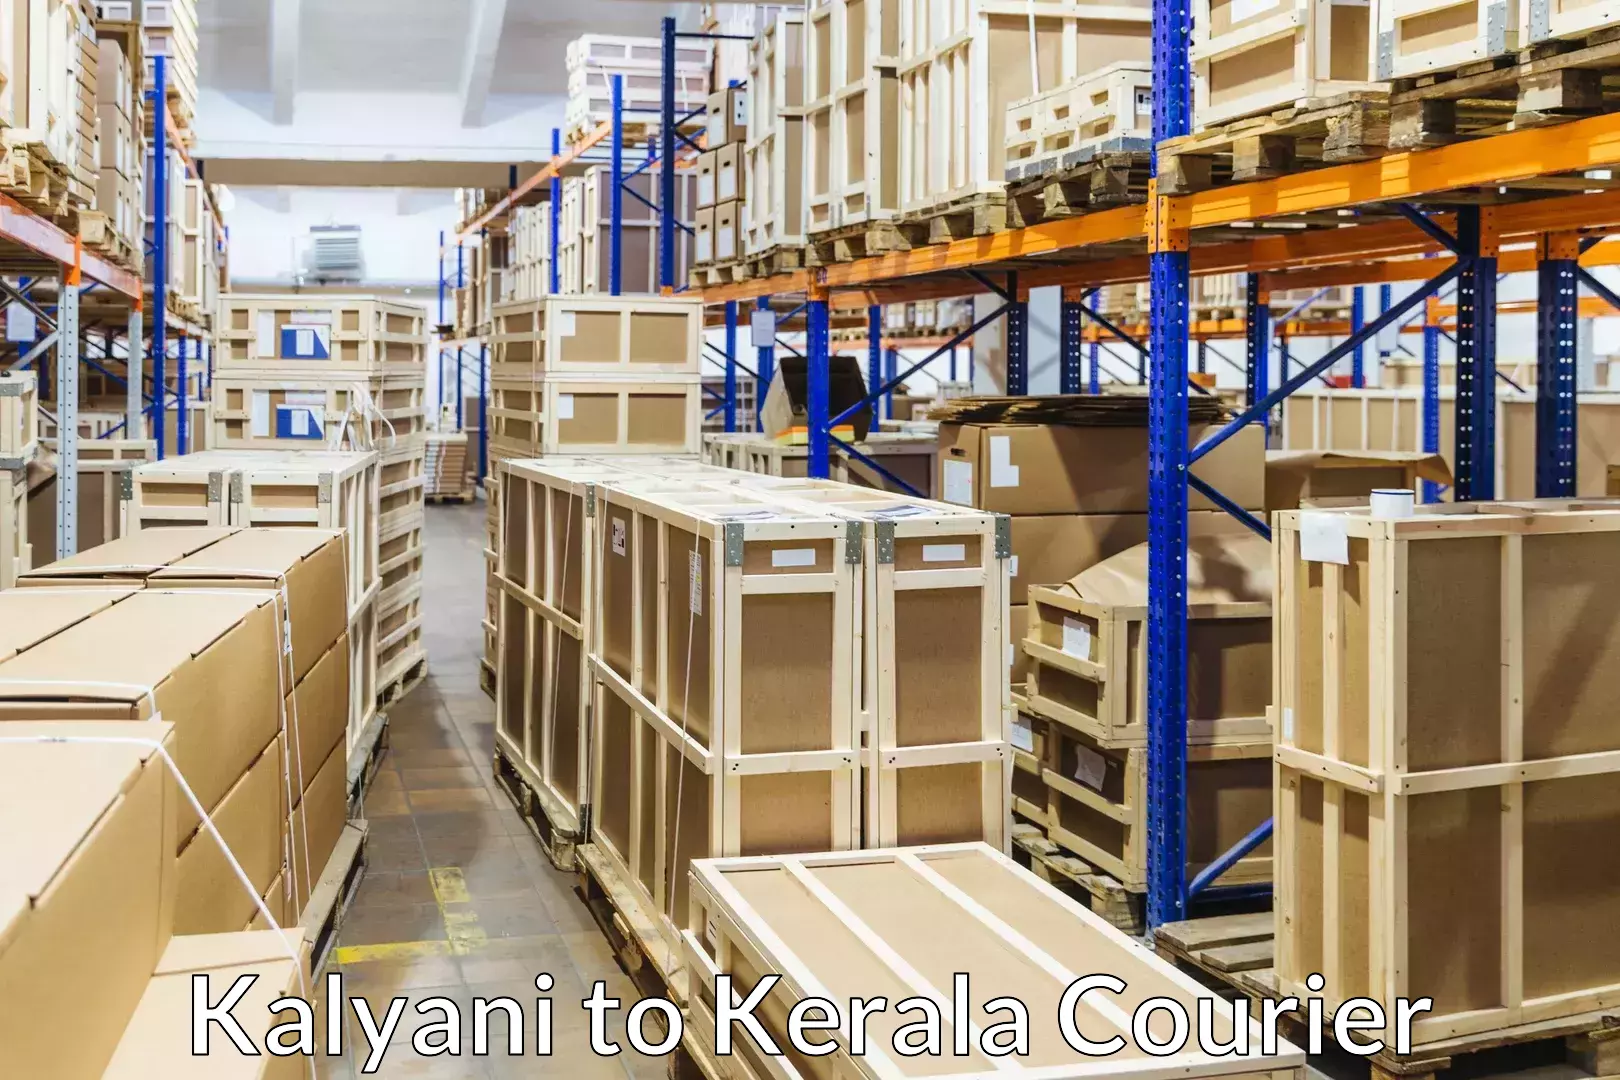 Professional movers Kalyani to Kattappana